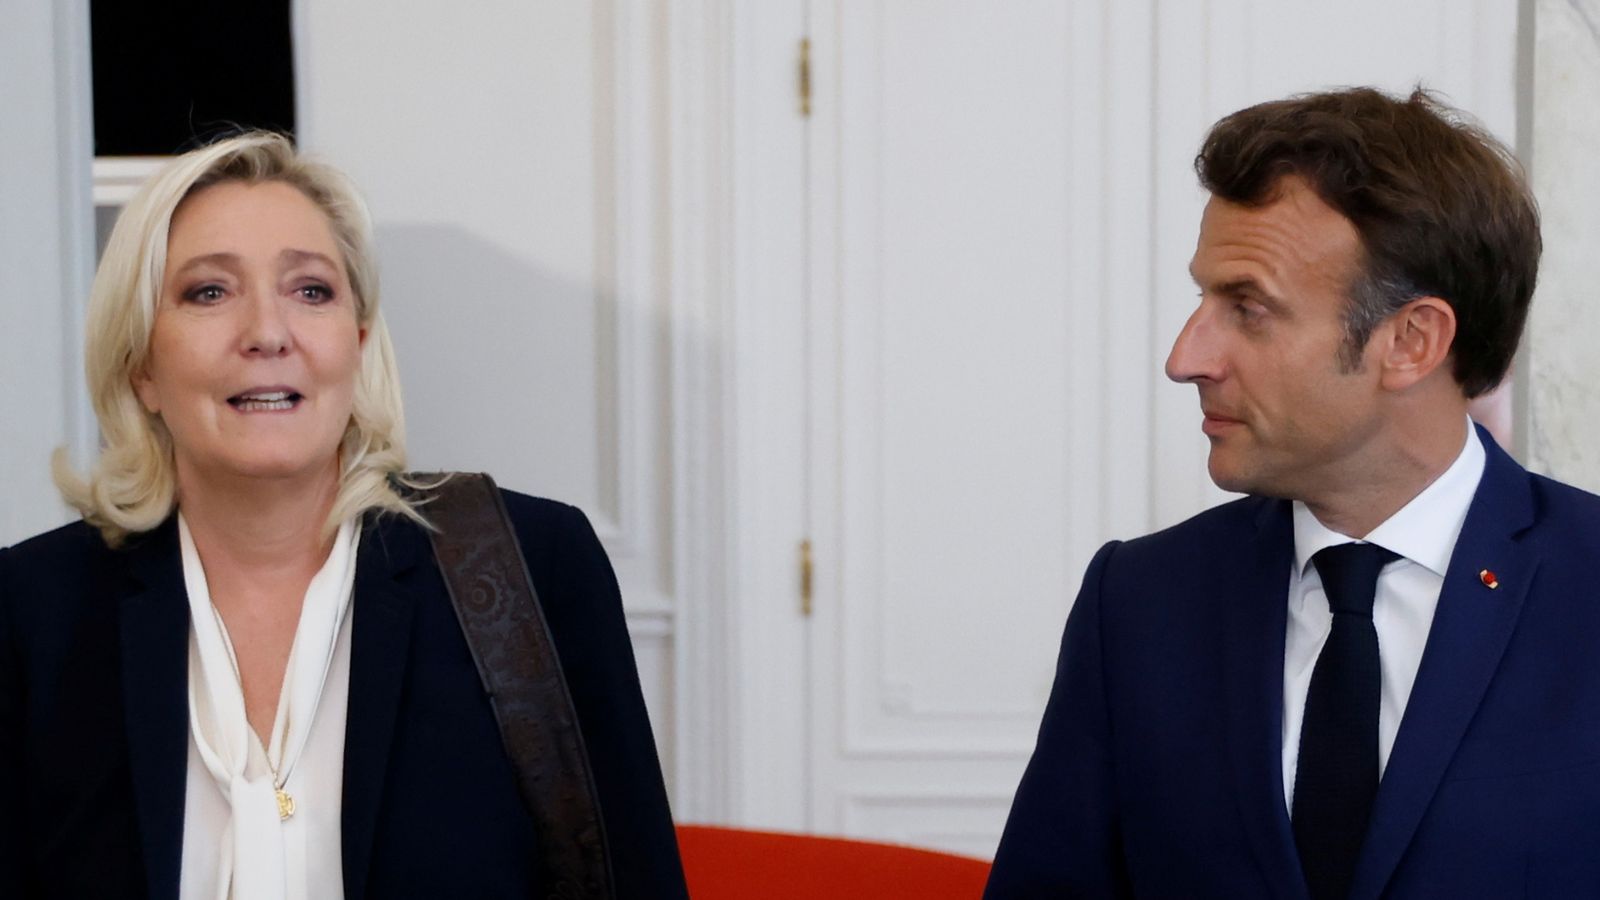 الانتخابات الفرنسية: مارين لوبان على حافة السلطة مع فشل رهان إيمانويل ماكرون الكبير |  اخبار العالم